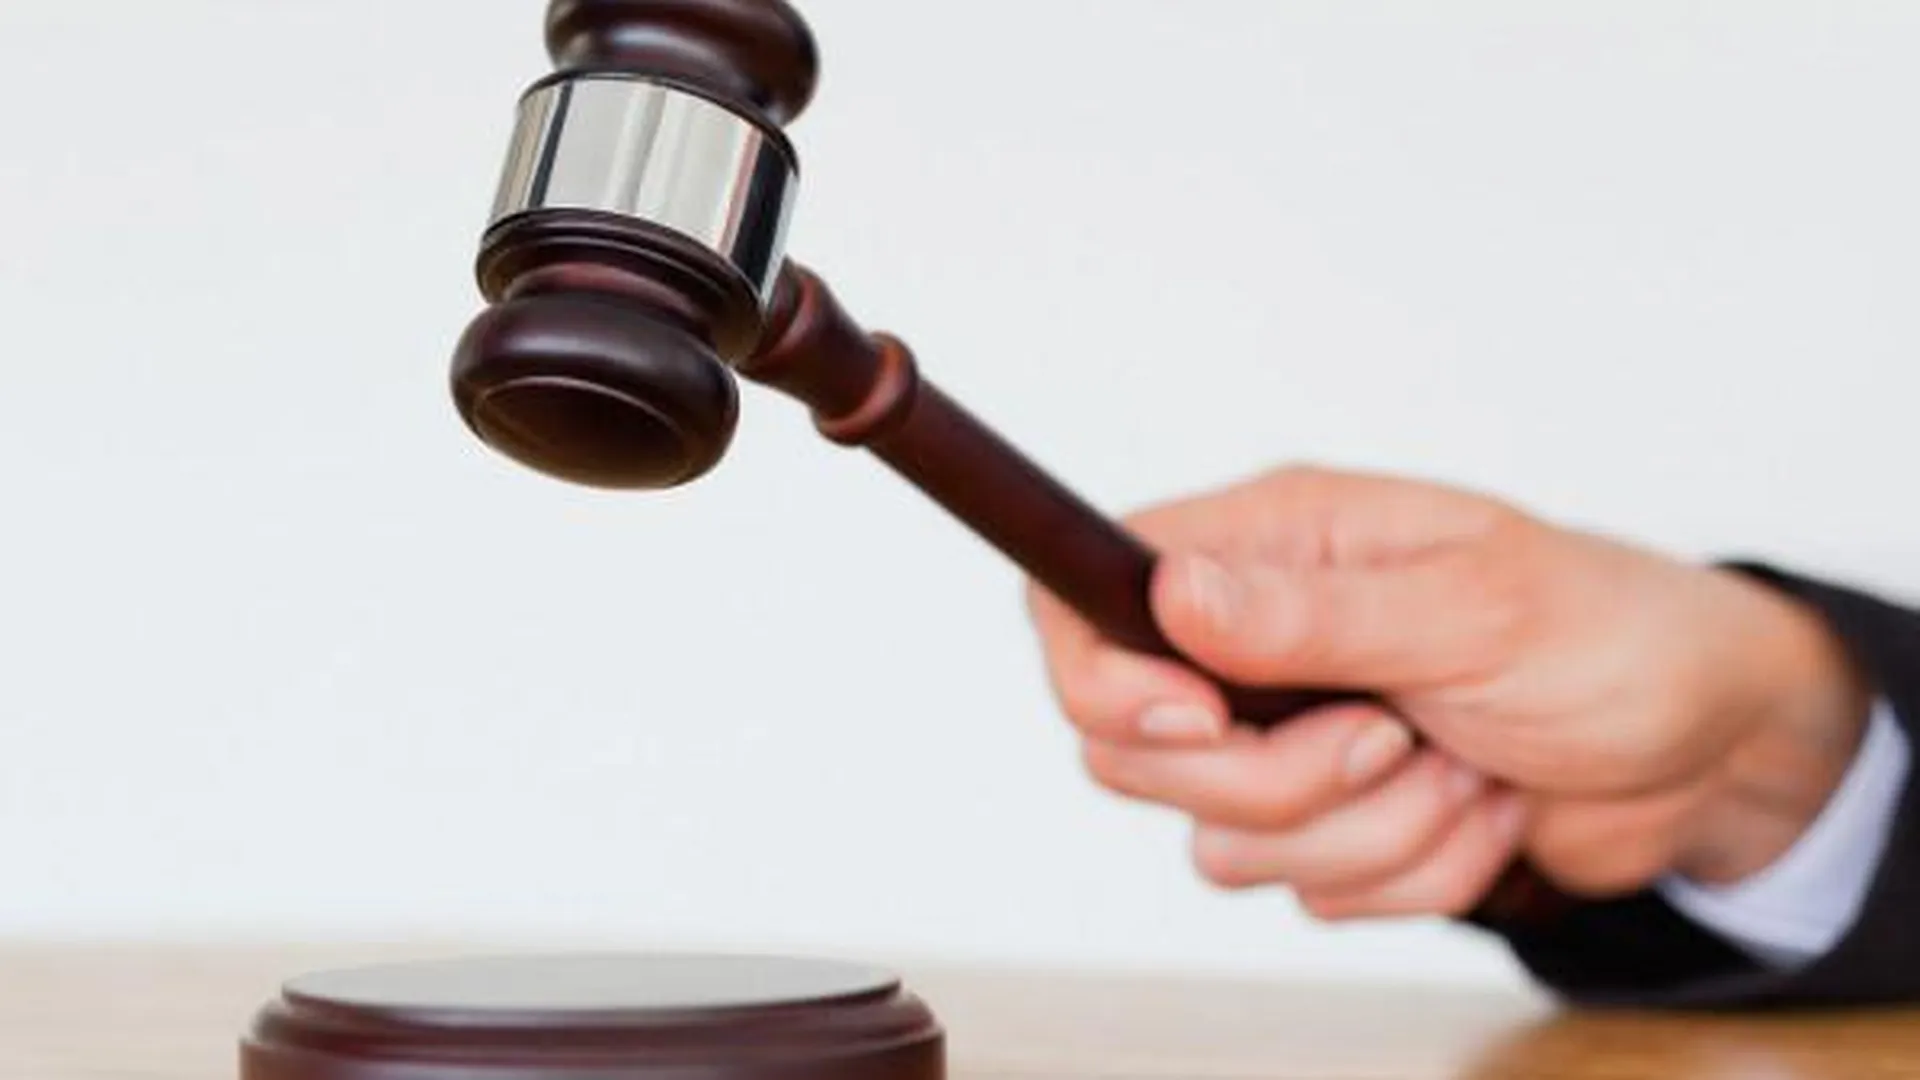 Права почти 800 дольщиков защитил Главгосстройнадзор в судебном порядке